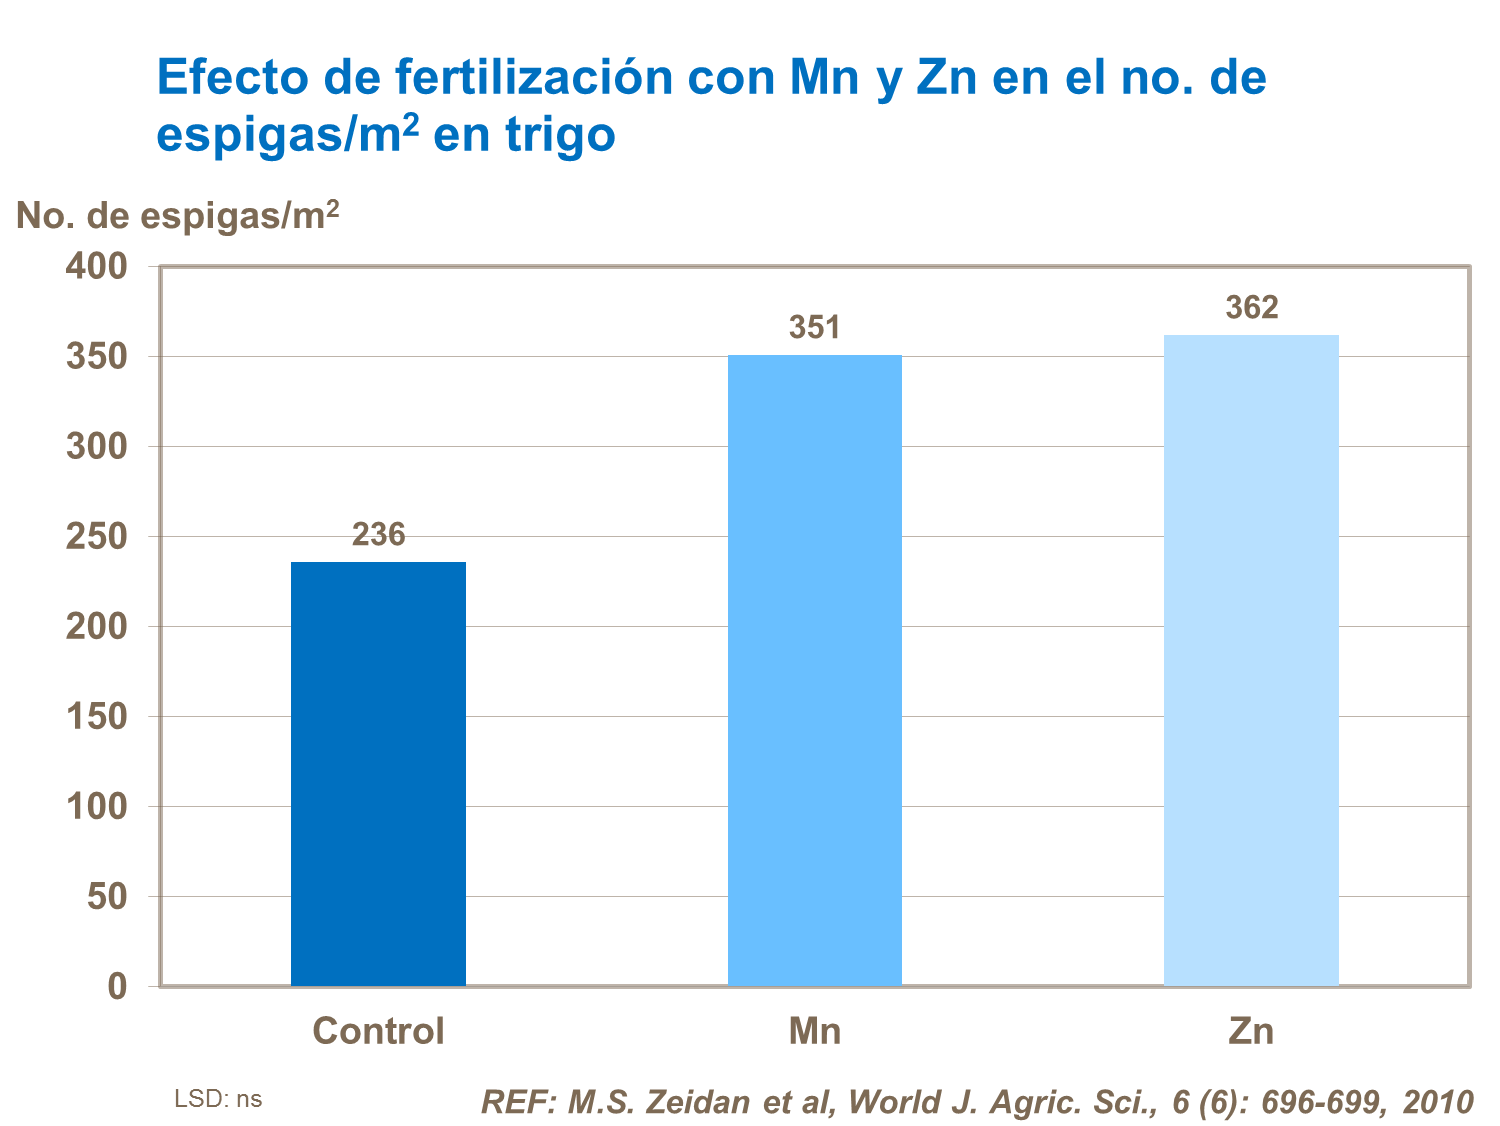 Efecto de fertilización con Ms y Zn en el no. de espigas/m2